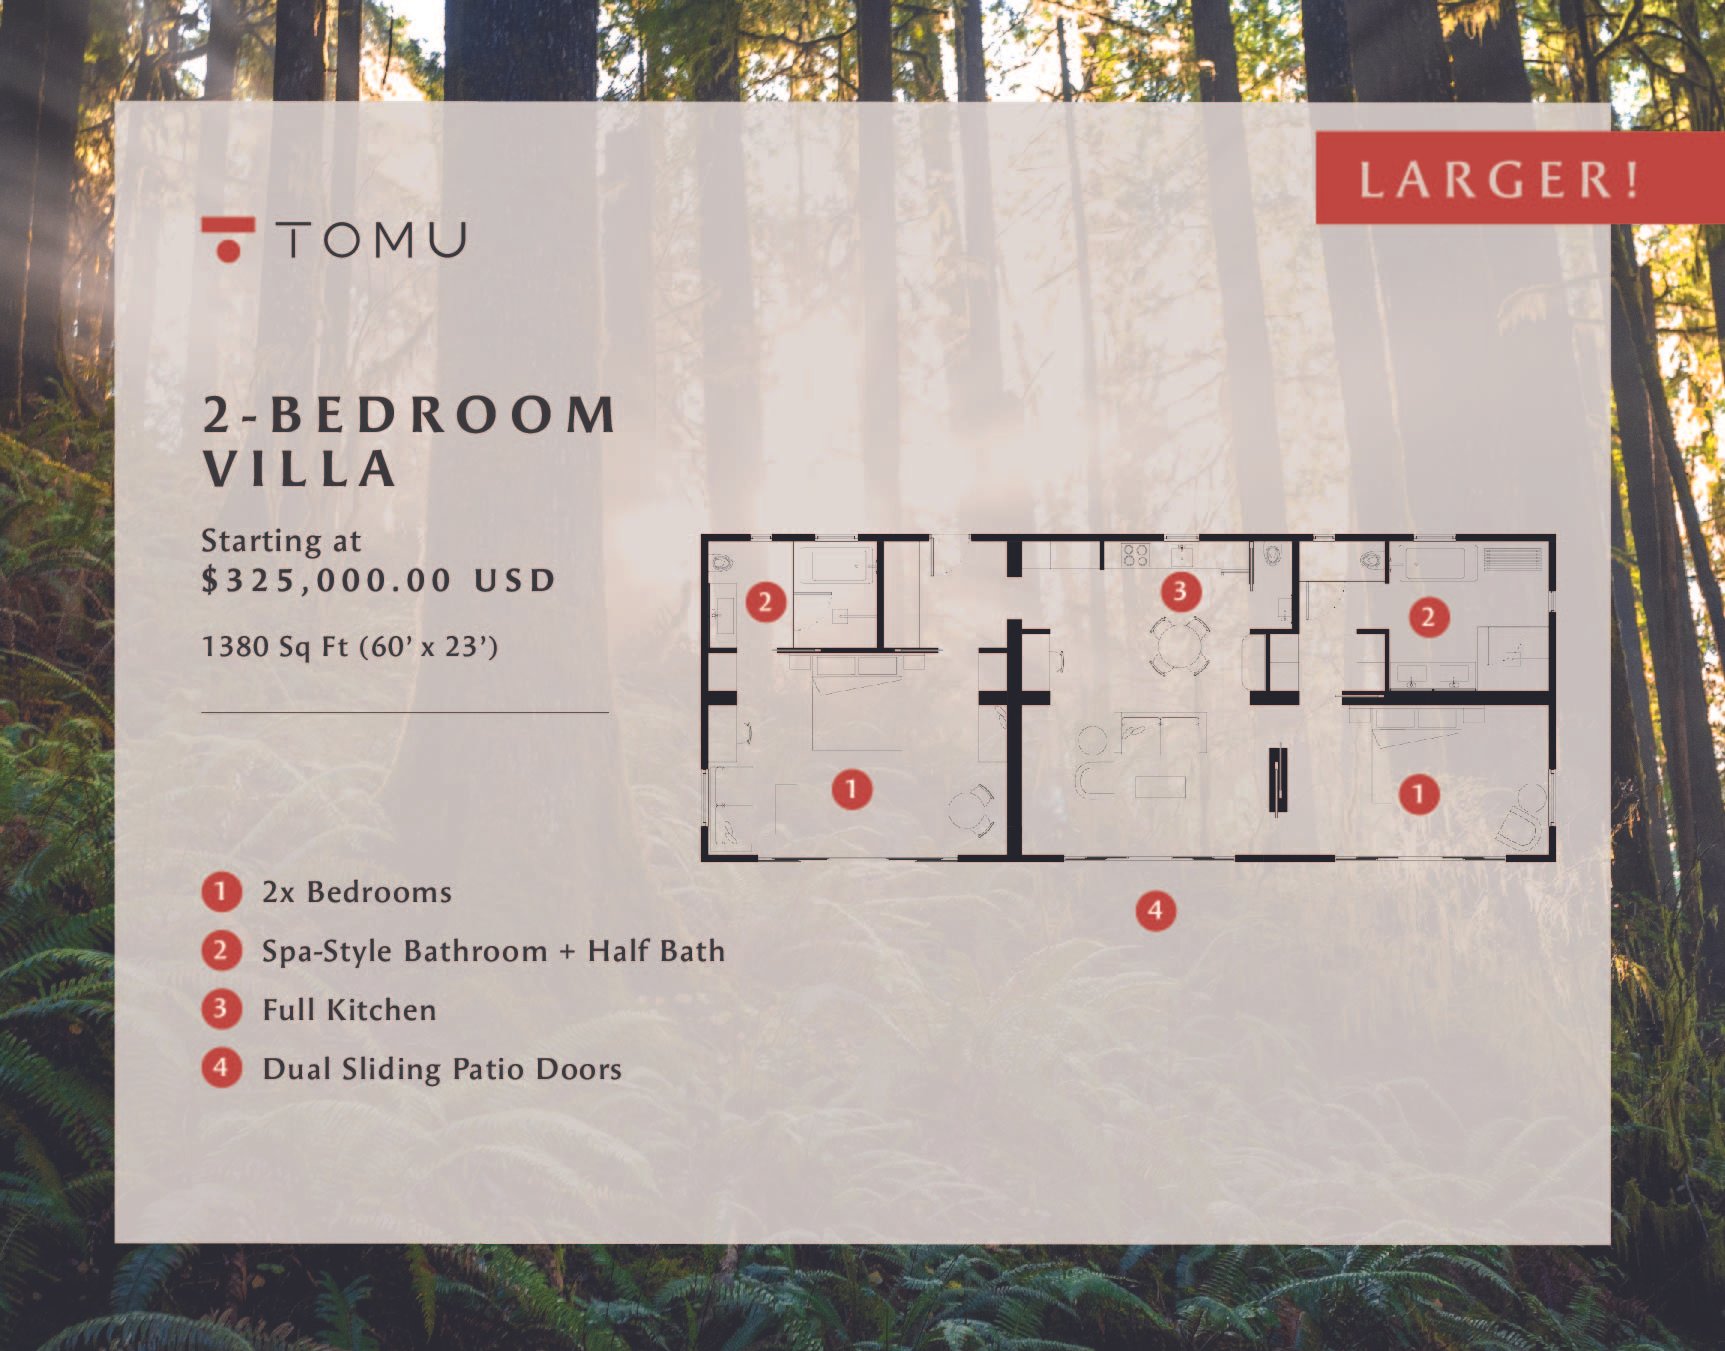 Tomu 2-Bedroom Villa Floor Plan 2024.jpg